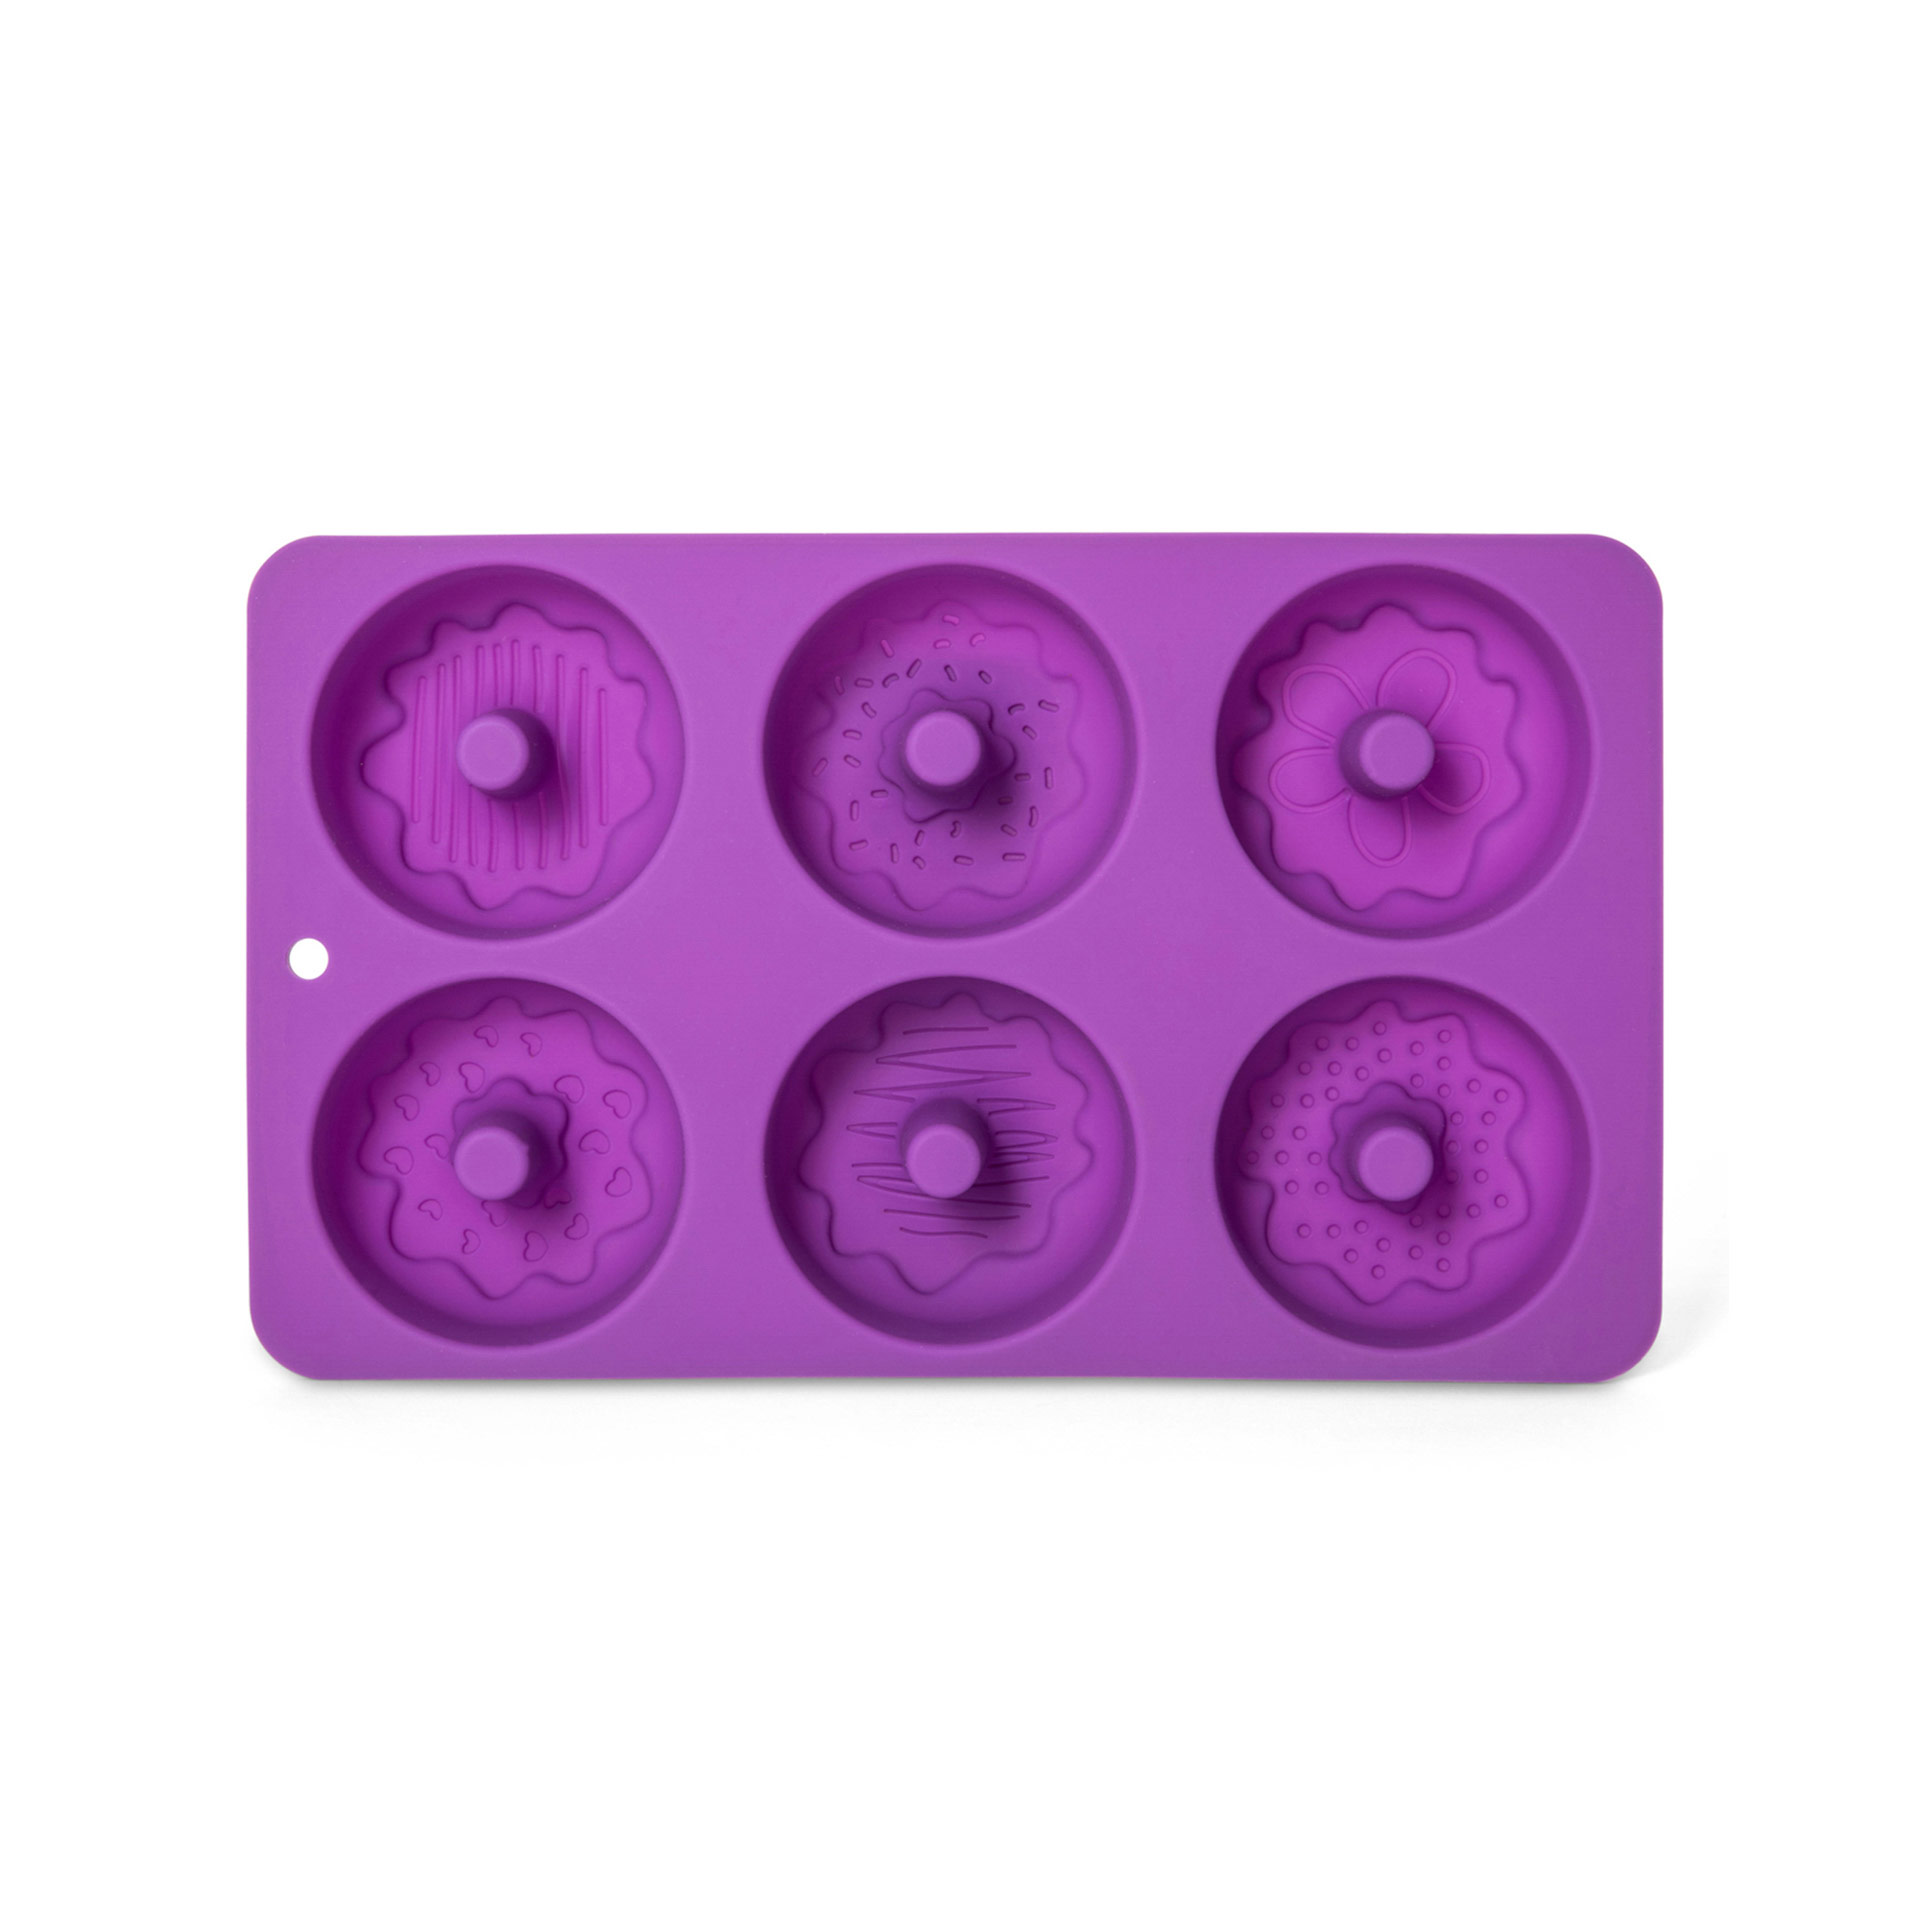 Stampo in silicone per 6 donut con decorazioni, , large